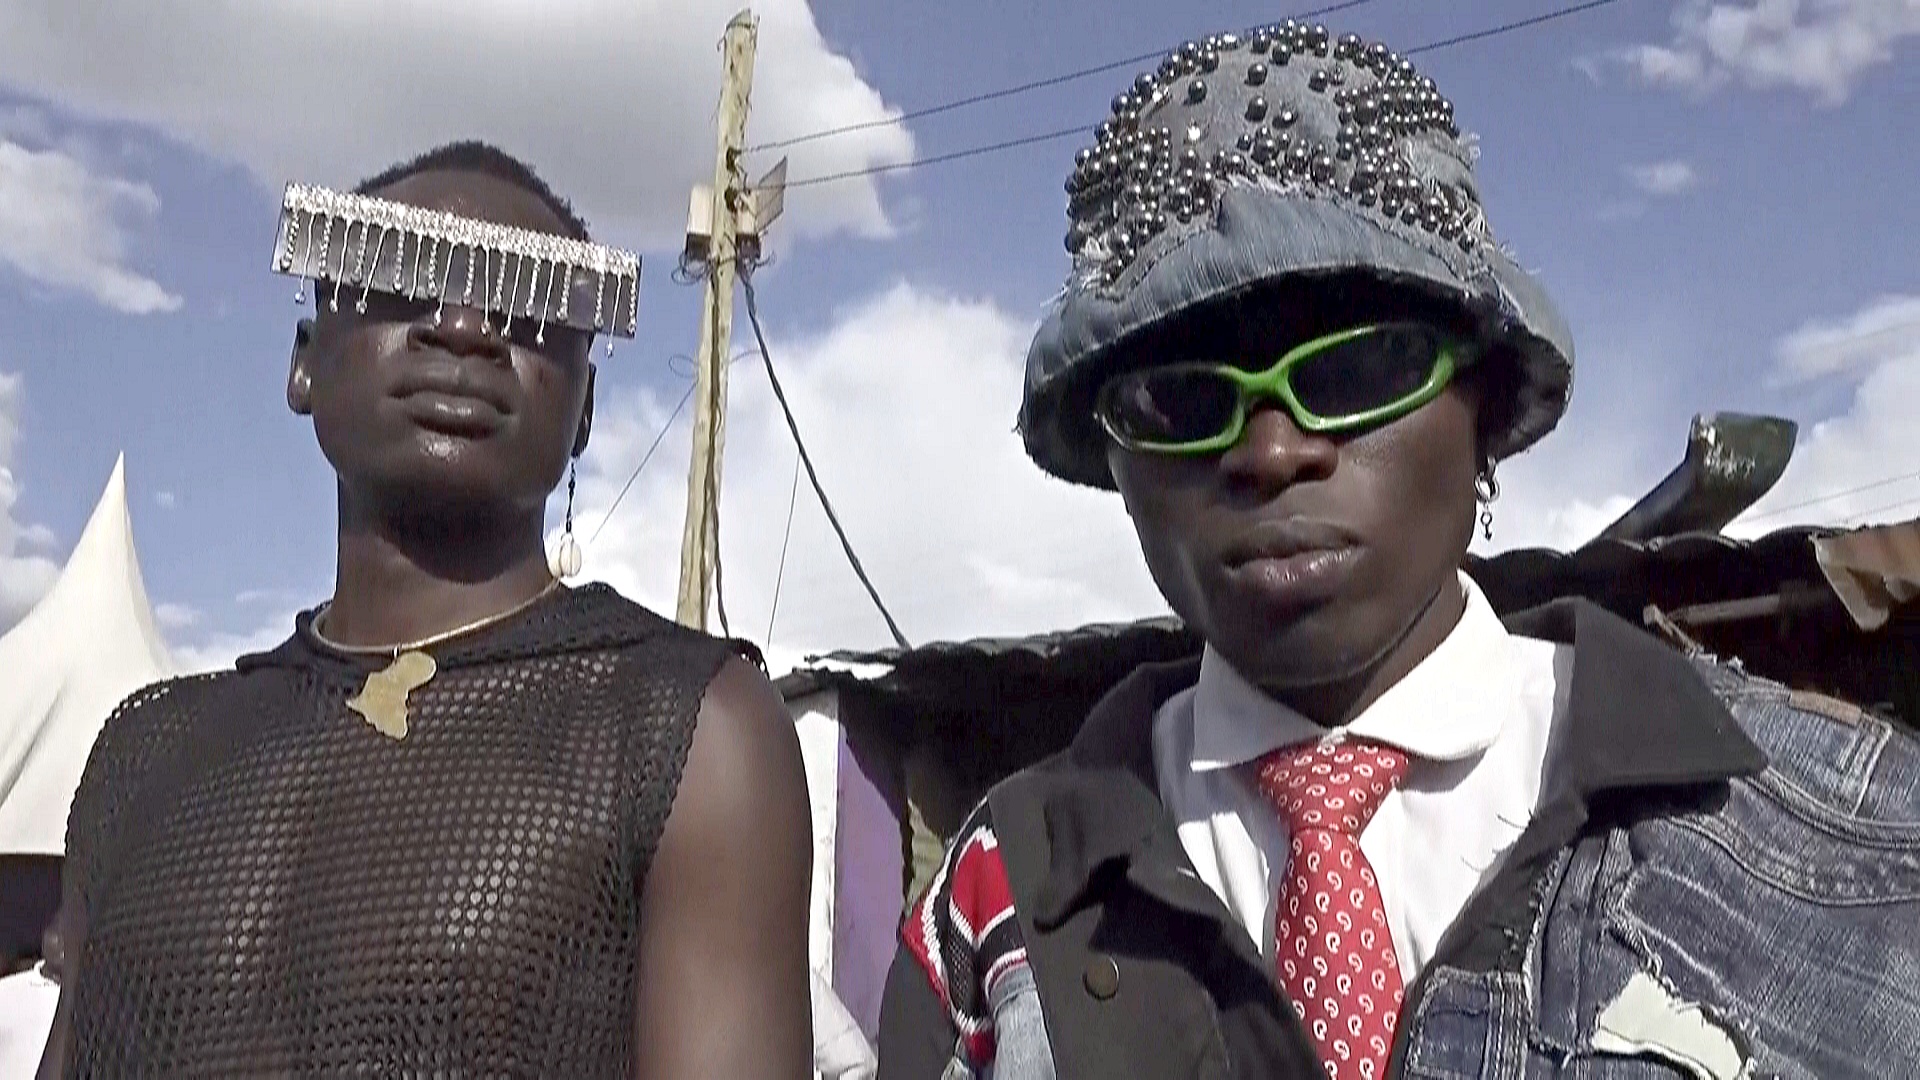 Неделя моды в трущобах: как дизайнеры Кении продвигают свою моду